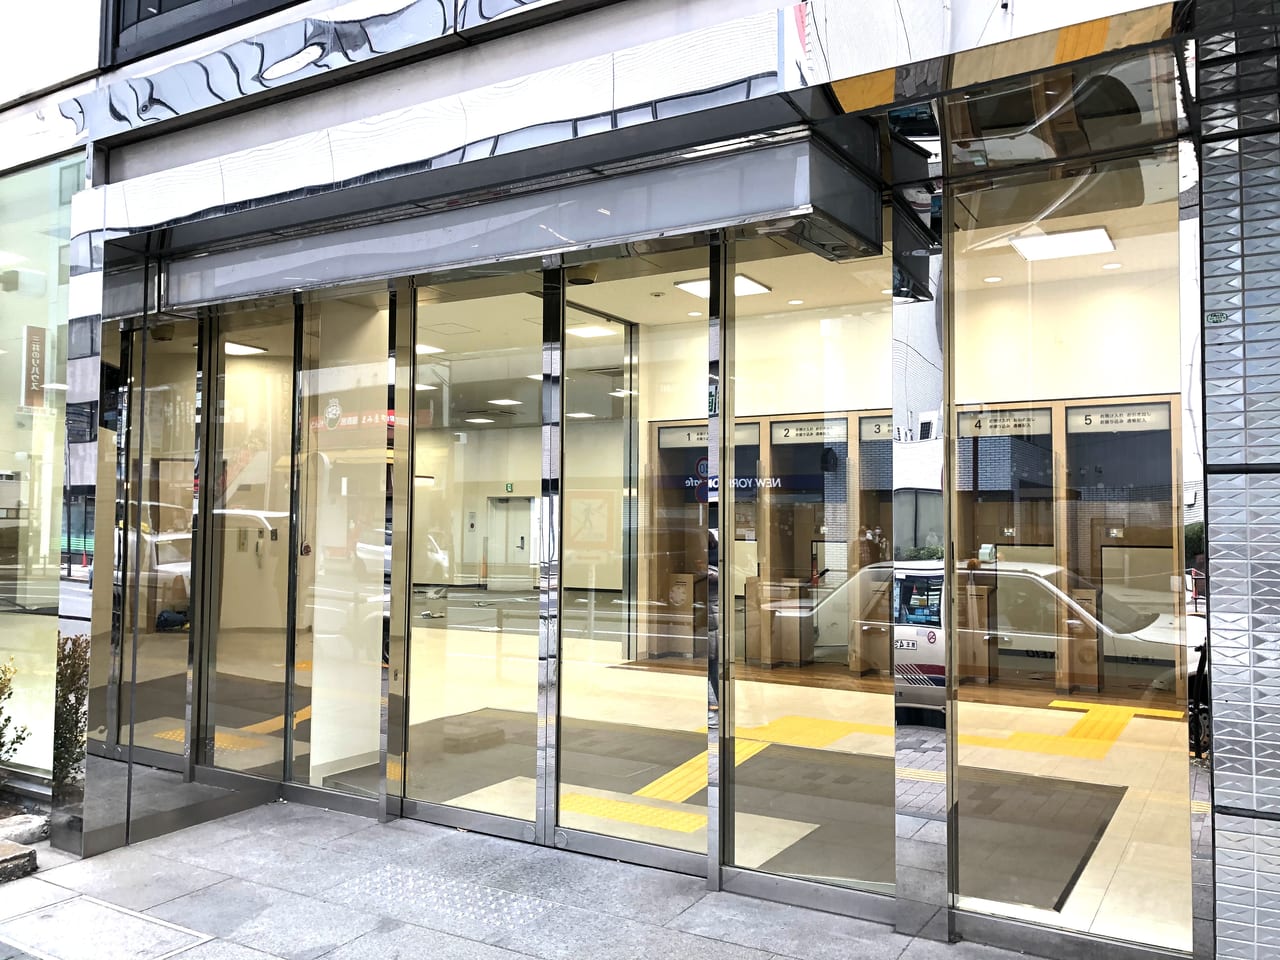 町田市 横浜銀行 町田支店の新店舗が明日1月25日オープンになります 町田駅前大通りの市庁舎よりに場所が変わりましたよ 号外net 町田市